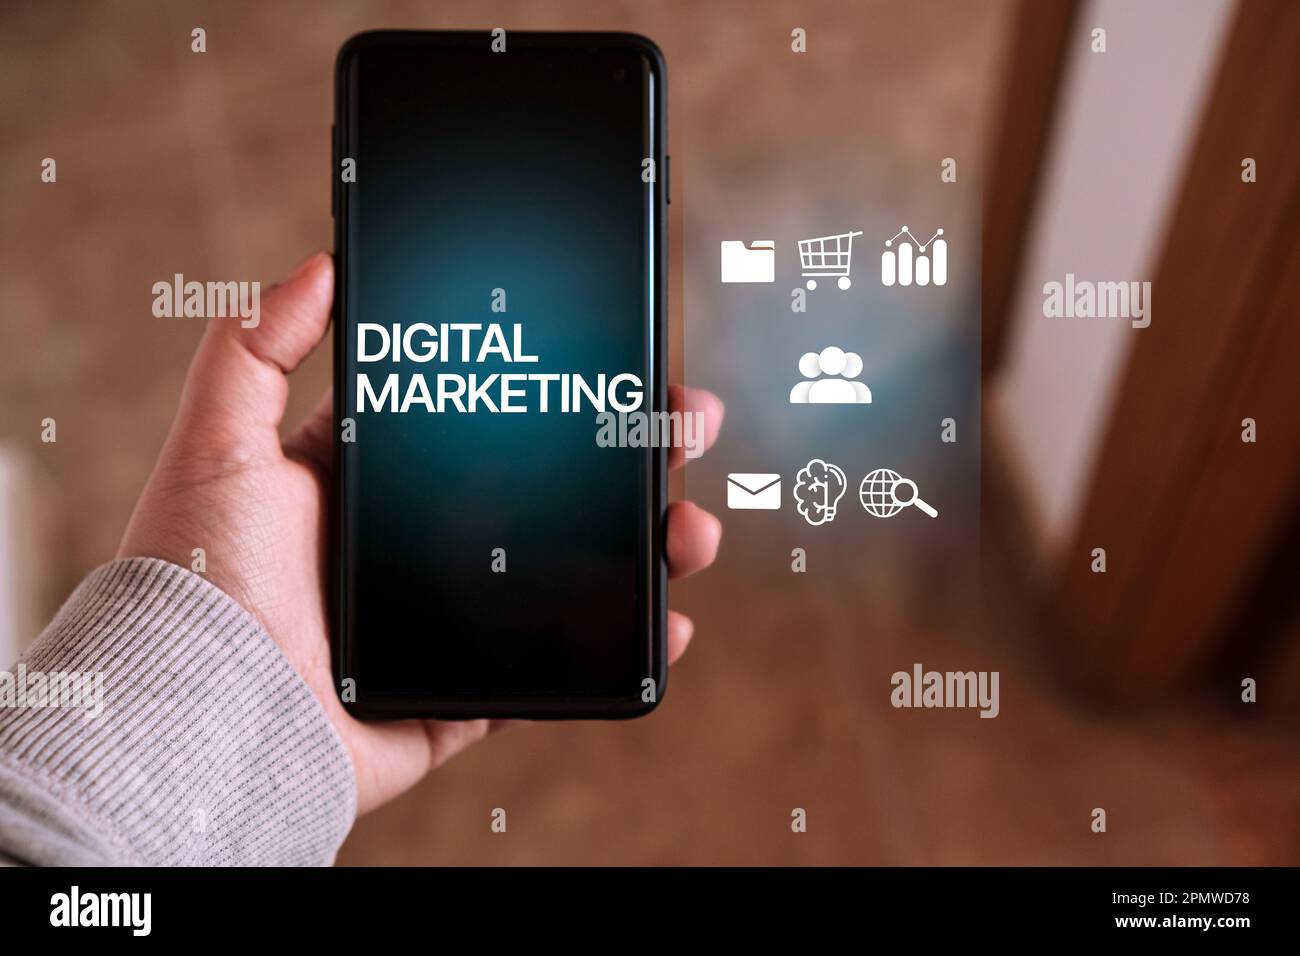 Frau Usign Smartphone mit „Digital Marketing“ auf dem Bildschirm und VR-Schnittstelle. Technologiekonzept für digitales Marketing. Internet. Online. Stockfoto